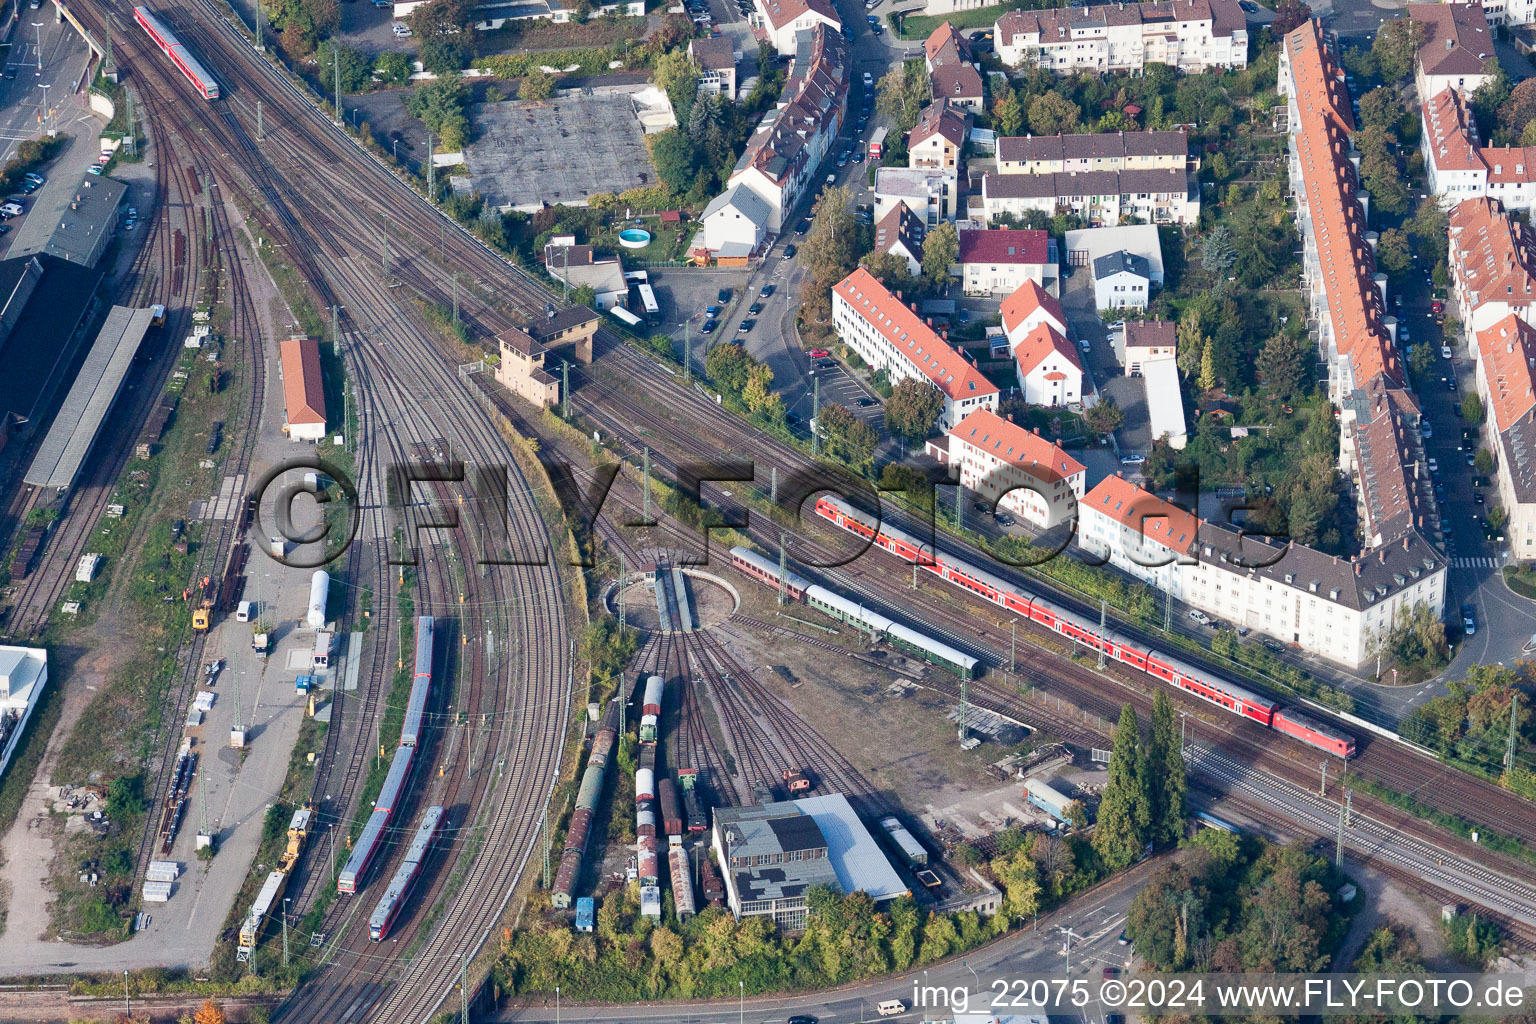 Luftbild von Streckenführung der Bahn- Kreuzung der Schienen- und Gleisanlagen der Deutschen Bahn in Neustadt an der Weinstraße im Bundesland Rheinland-Pfalz, Deutschland